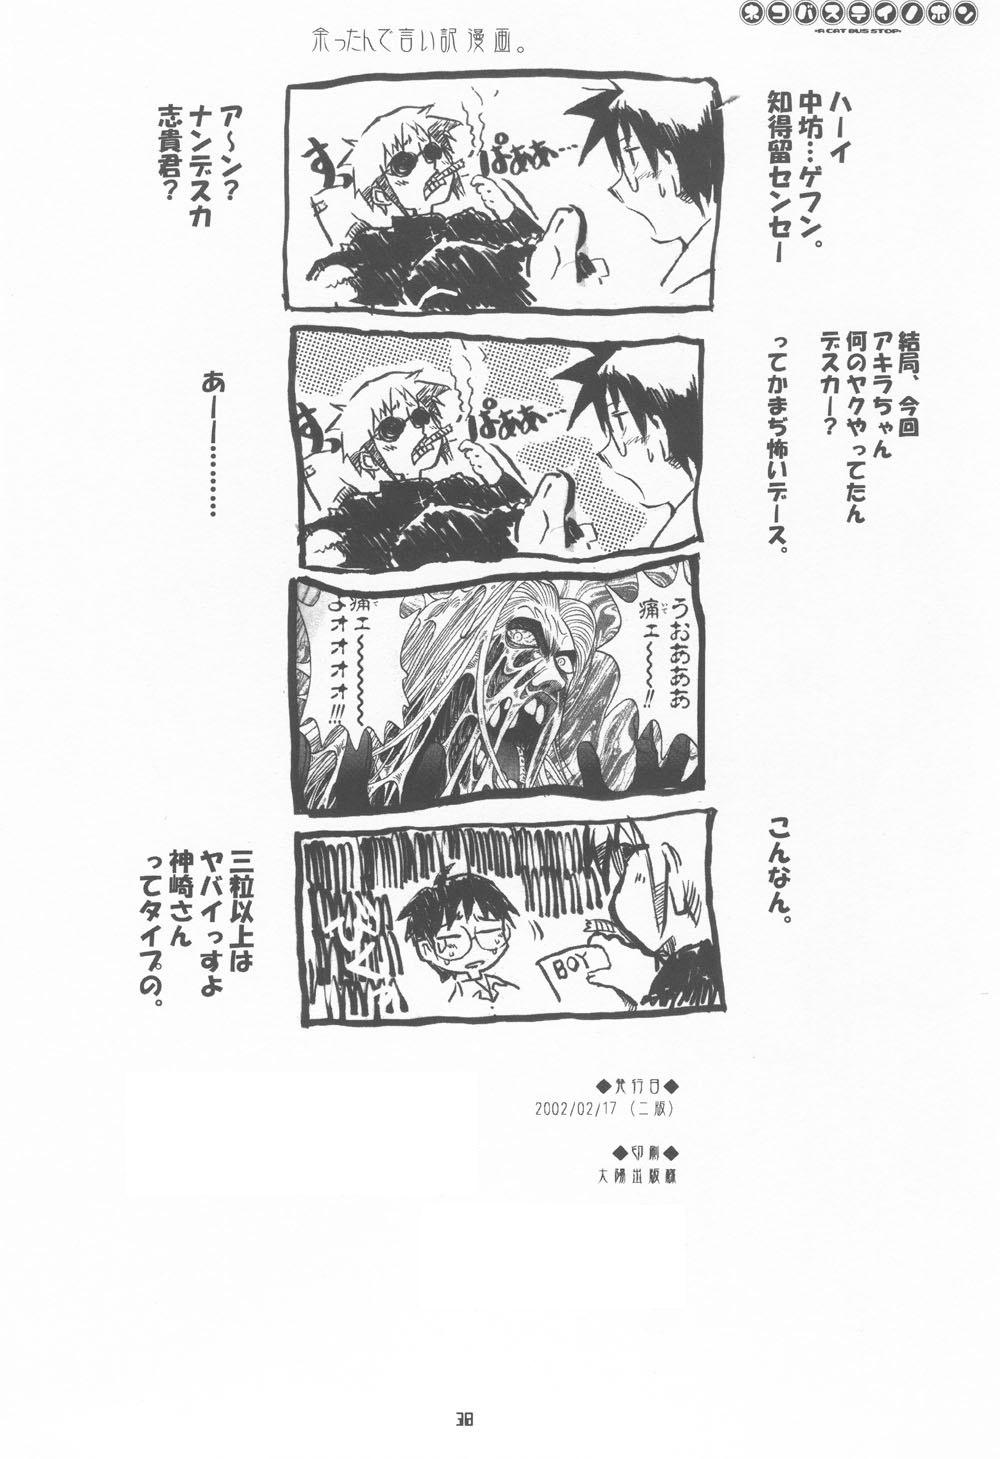 Russia Neko-bus Tei no Hon vol.4 - Tsukihime Bigcock - Page 37